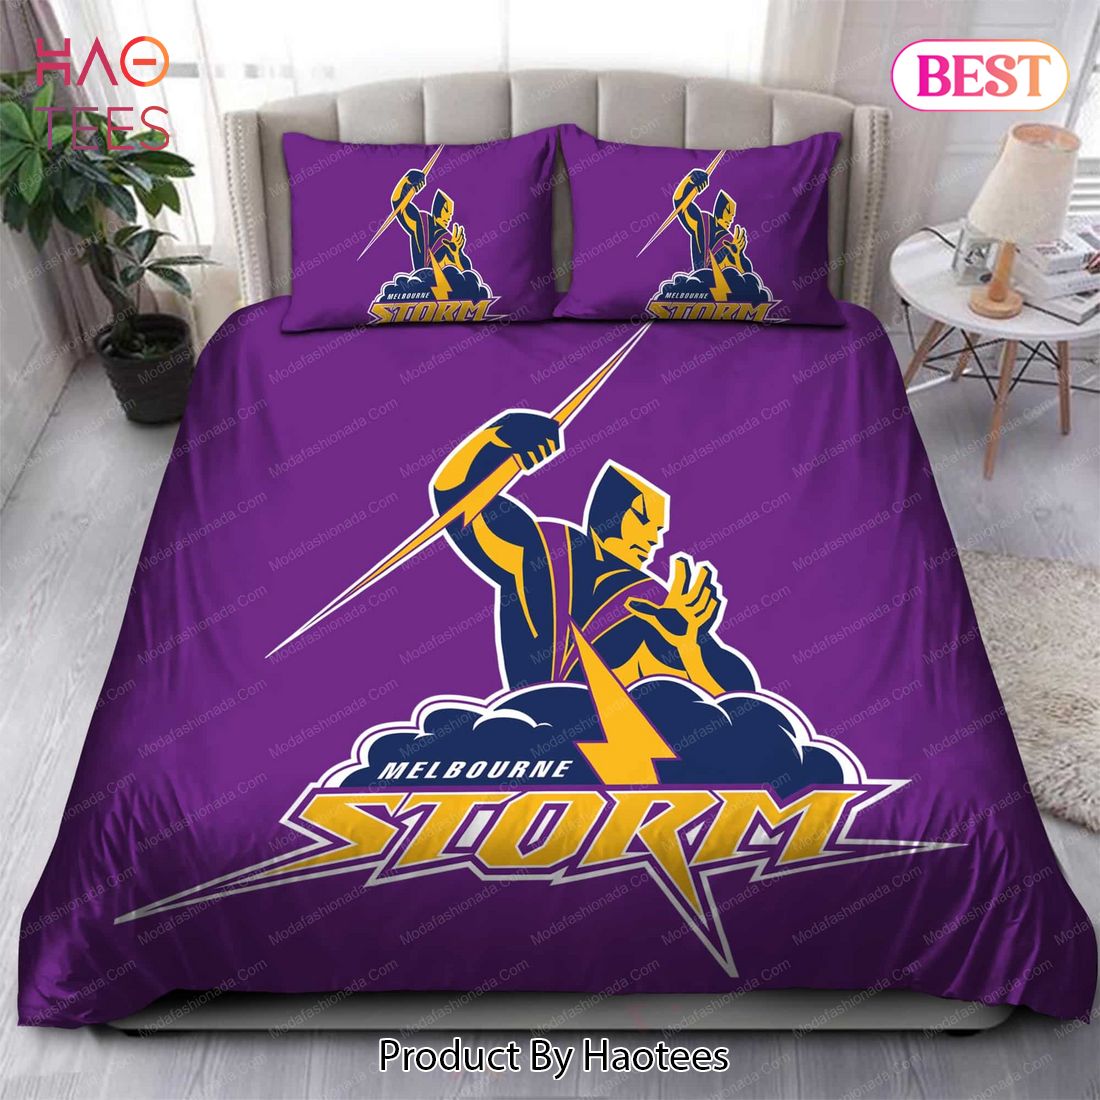 Buy Melbourne Storm Logo 1998 Bedding Sets Bed Sets, Bedroom Sets, Comforter Sets, Duvet Cover, Bedspread